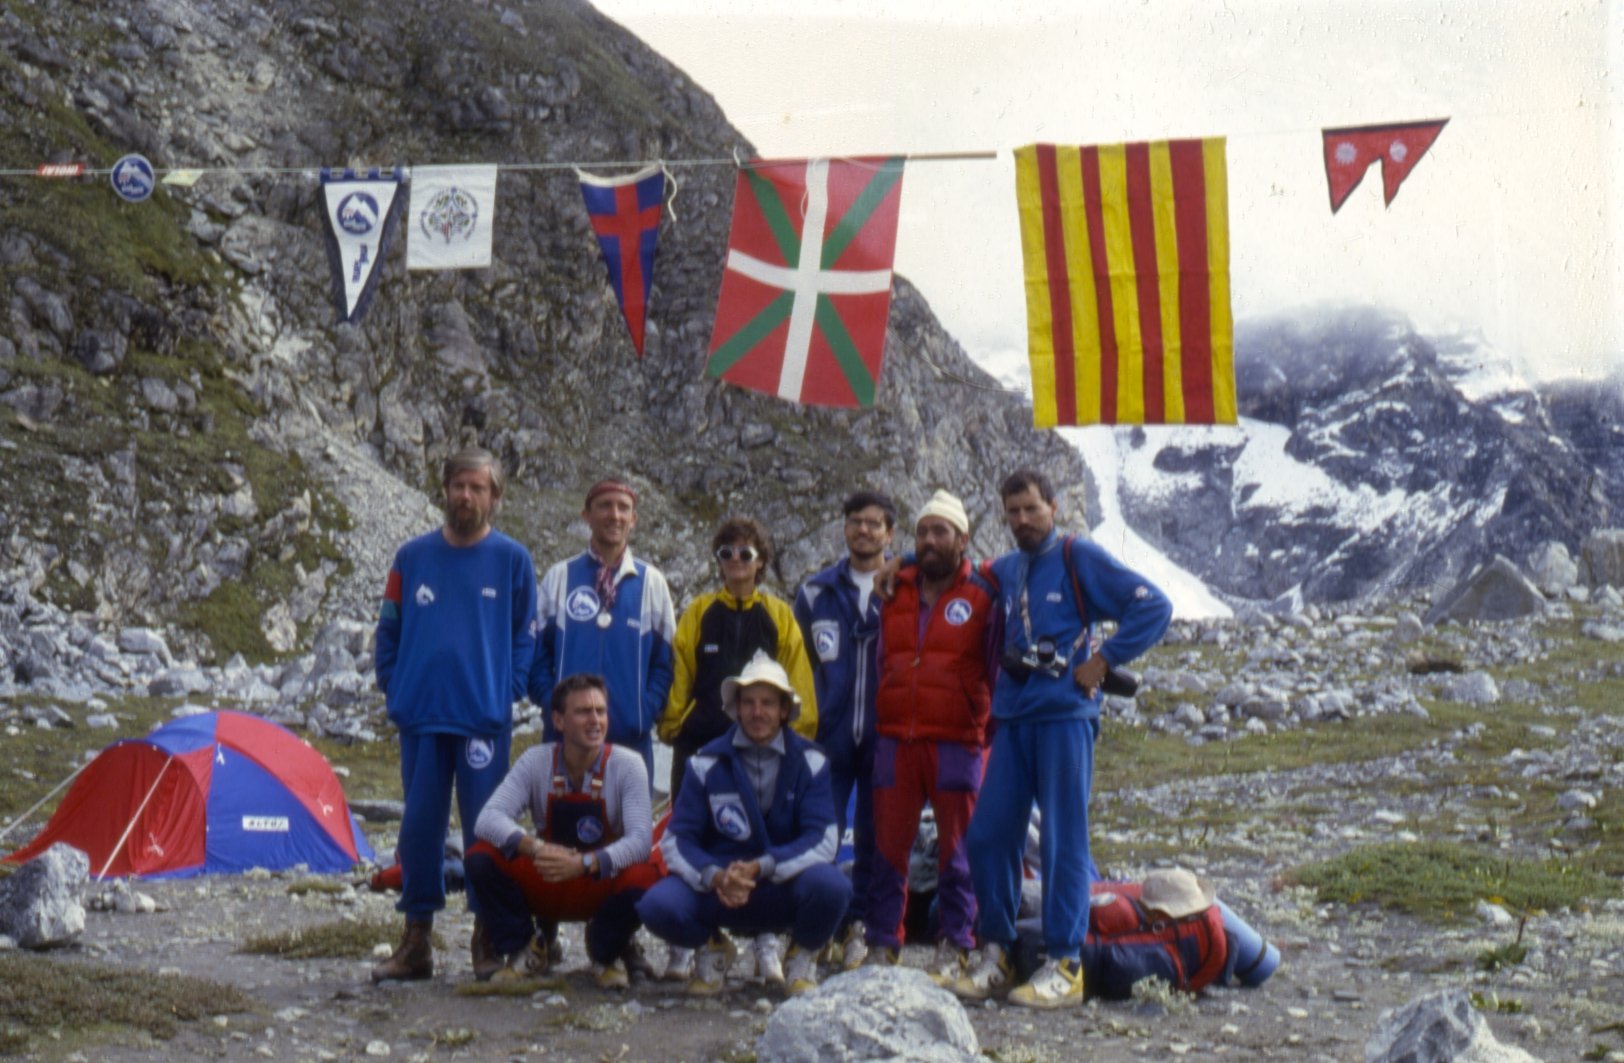 31 anys després Mataró recorda els 4 alpinistes de l'Agrupació Científico-Excursionista